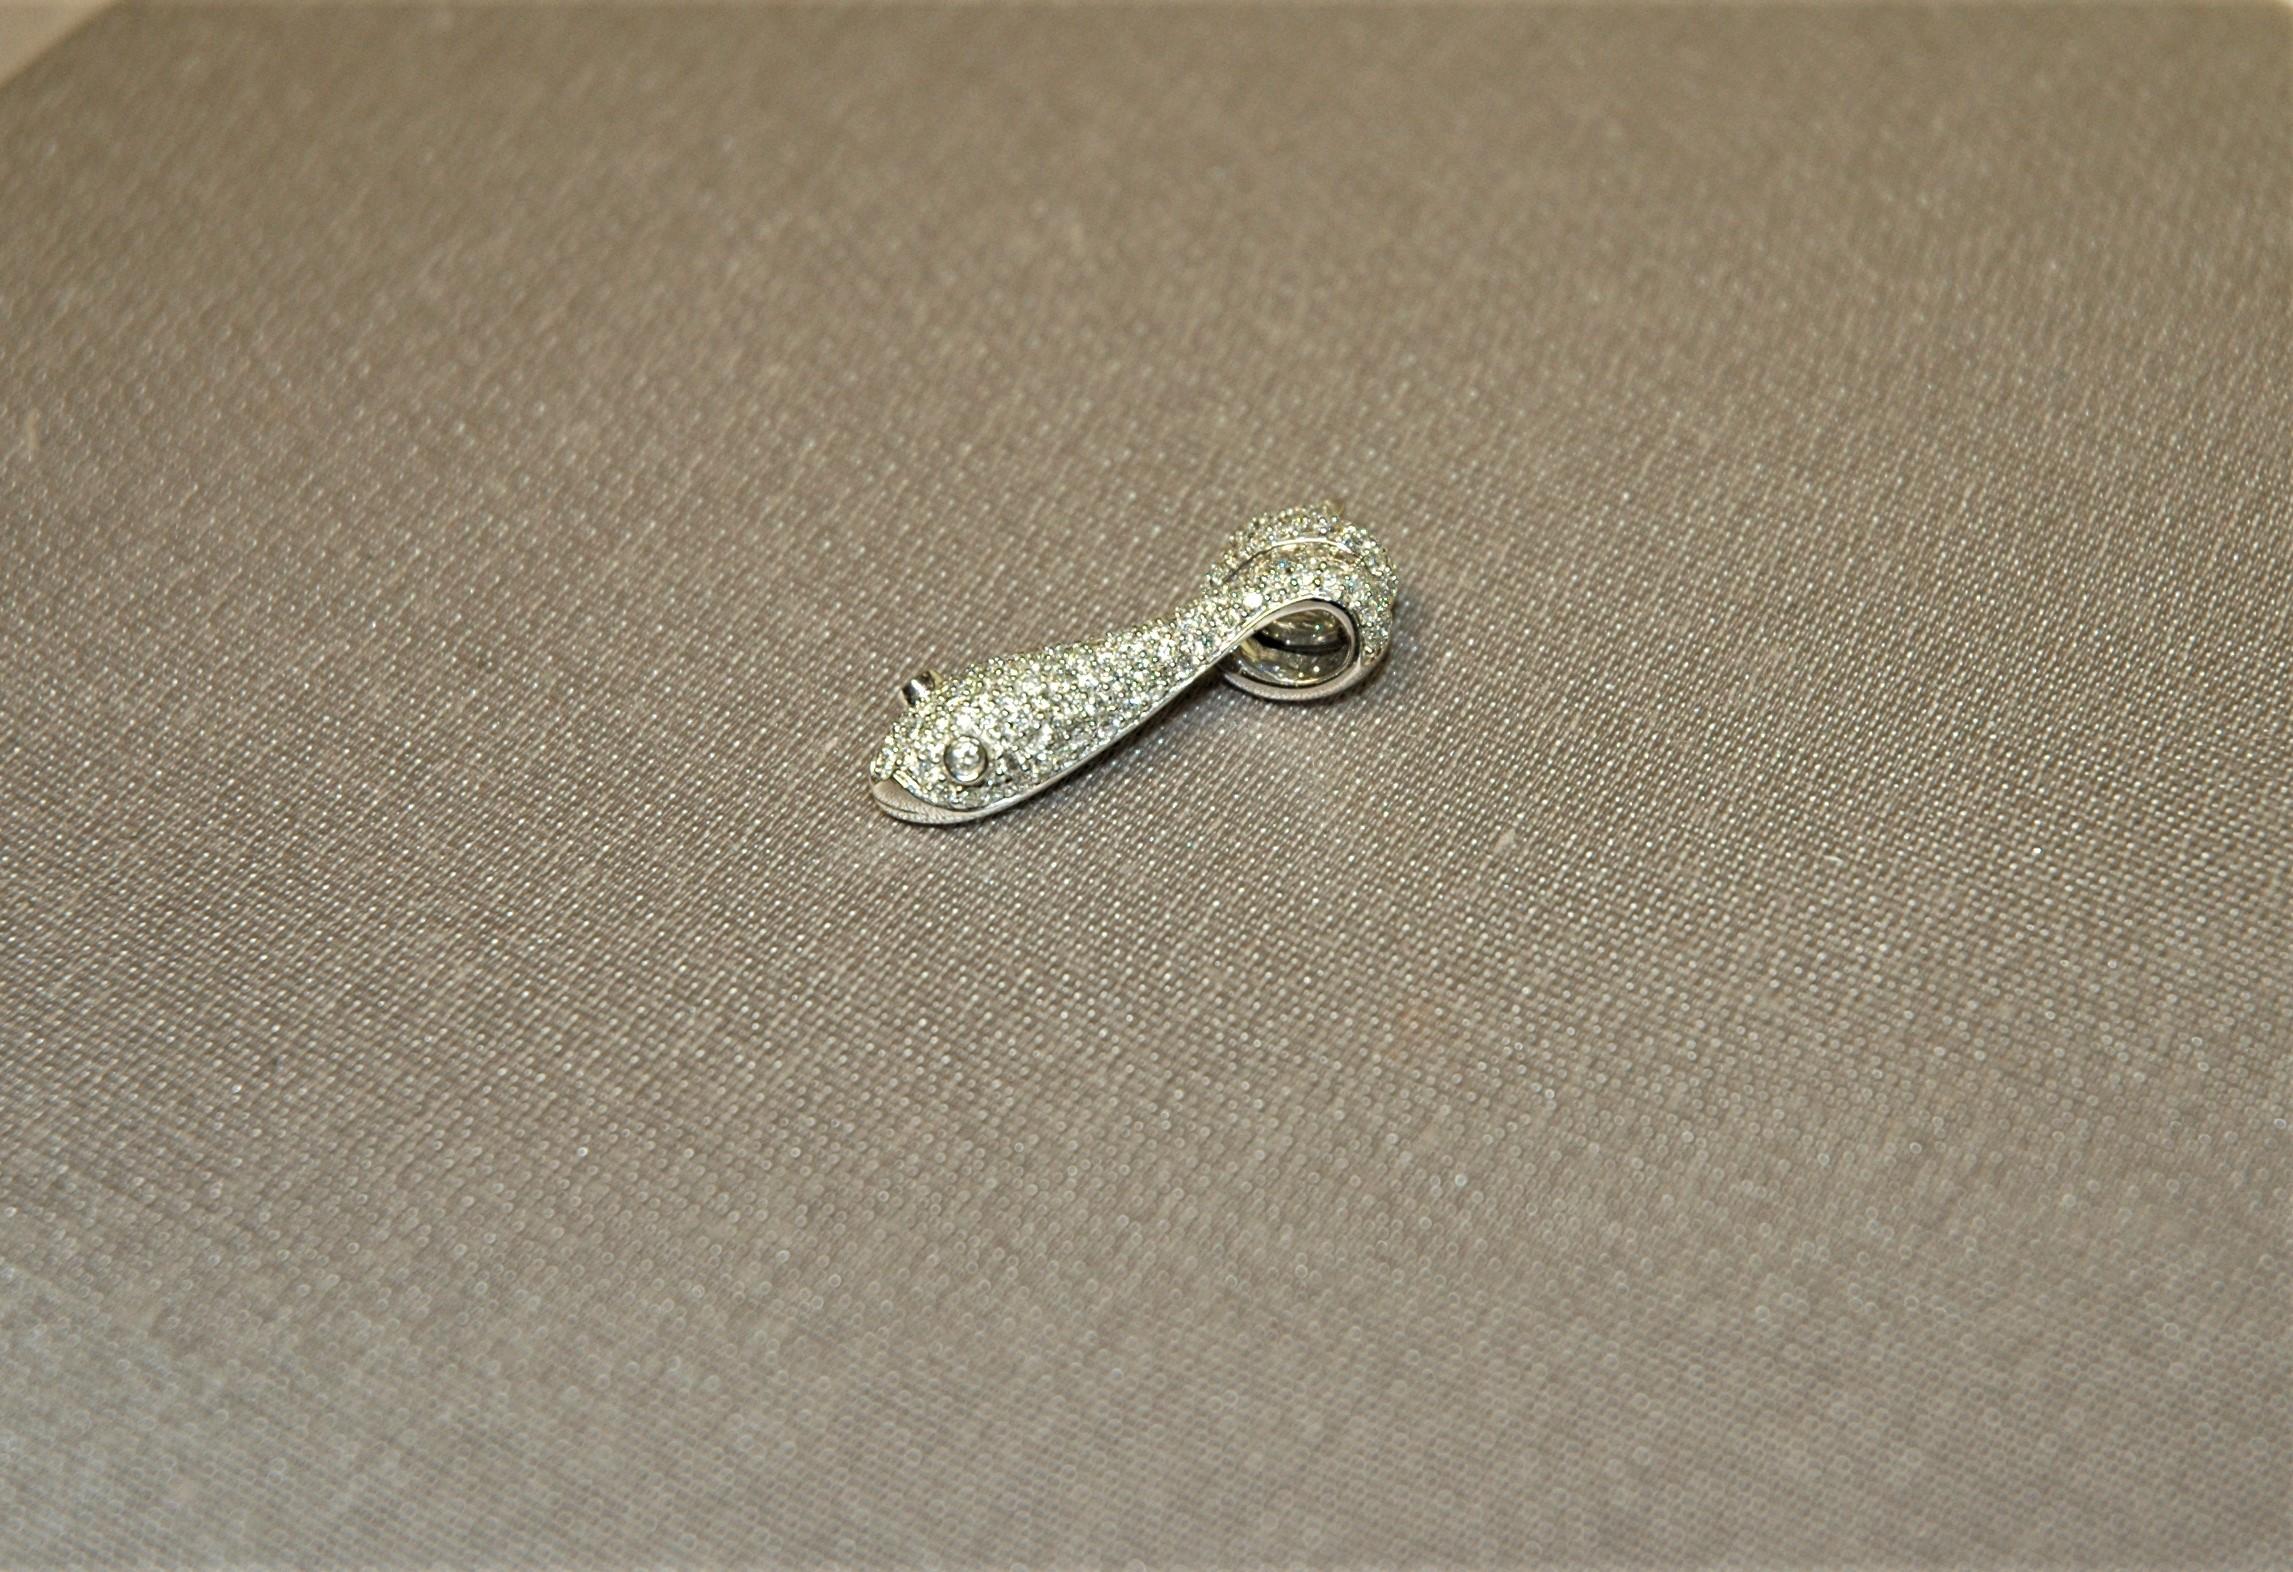 Anhänger aus Weißgold und Diamanten (0,82 Karat) in Form einer Schlange mit gewundenen Windungen.